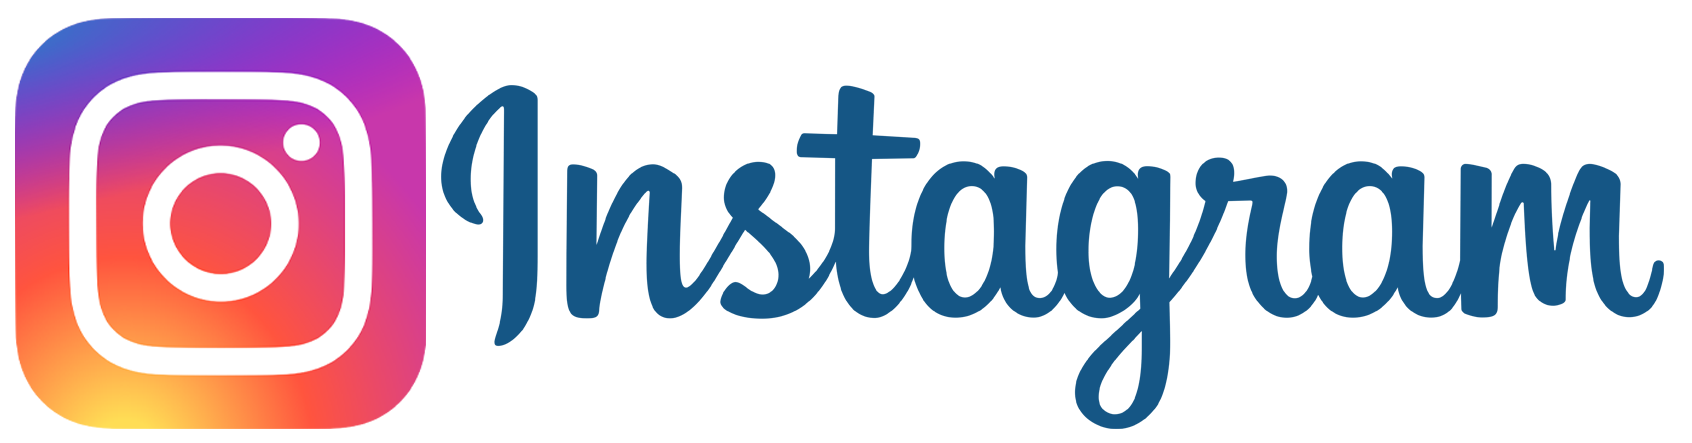 Надпись инстаграмм. Инстаграм лого. Логотип Instagram на прозрачном фоне. Надпись Инстаграм на прозрачном фоне.